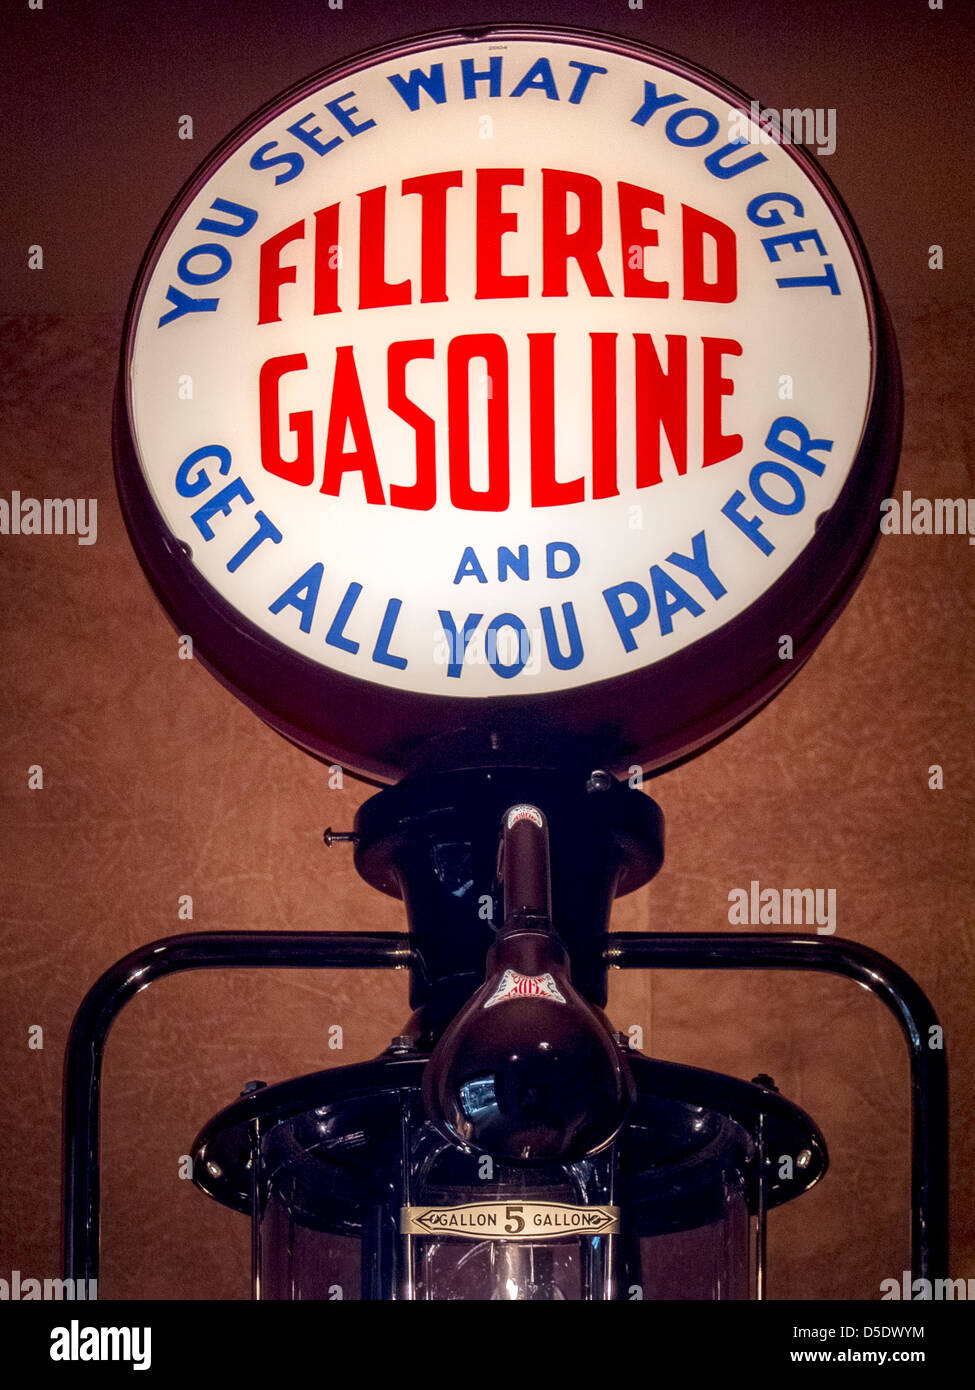 Un cartel publicitario iluminado en 1935 Bennett 150 estaciones de servicio de la bomba de gasolina promete un trato justo para los clientes. Foto de stock